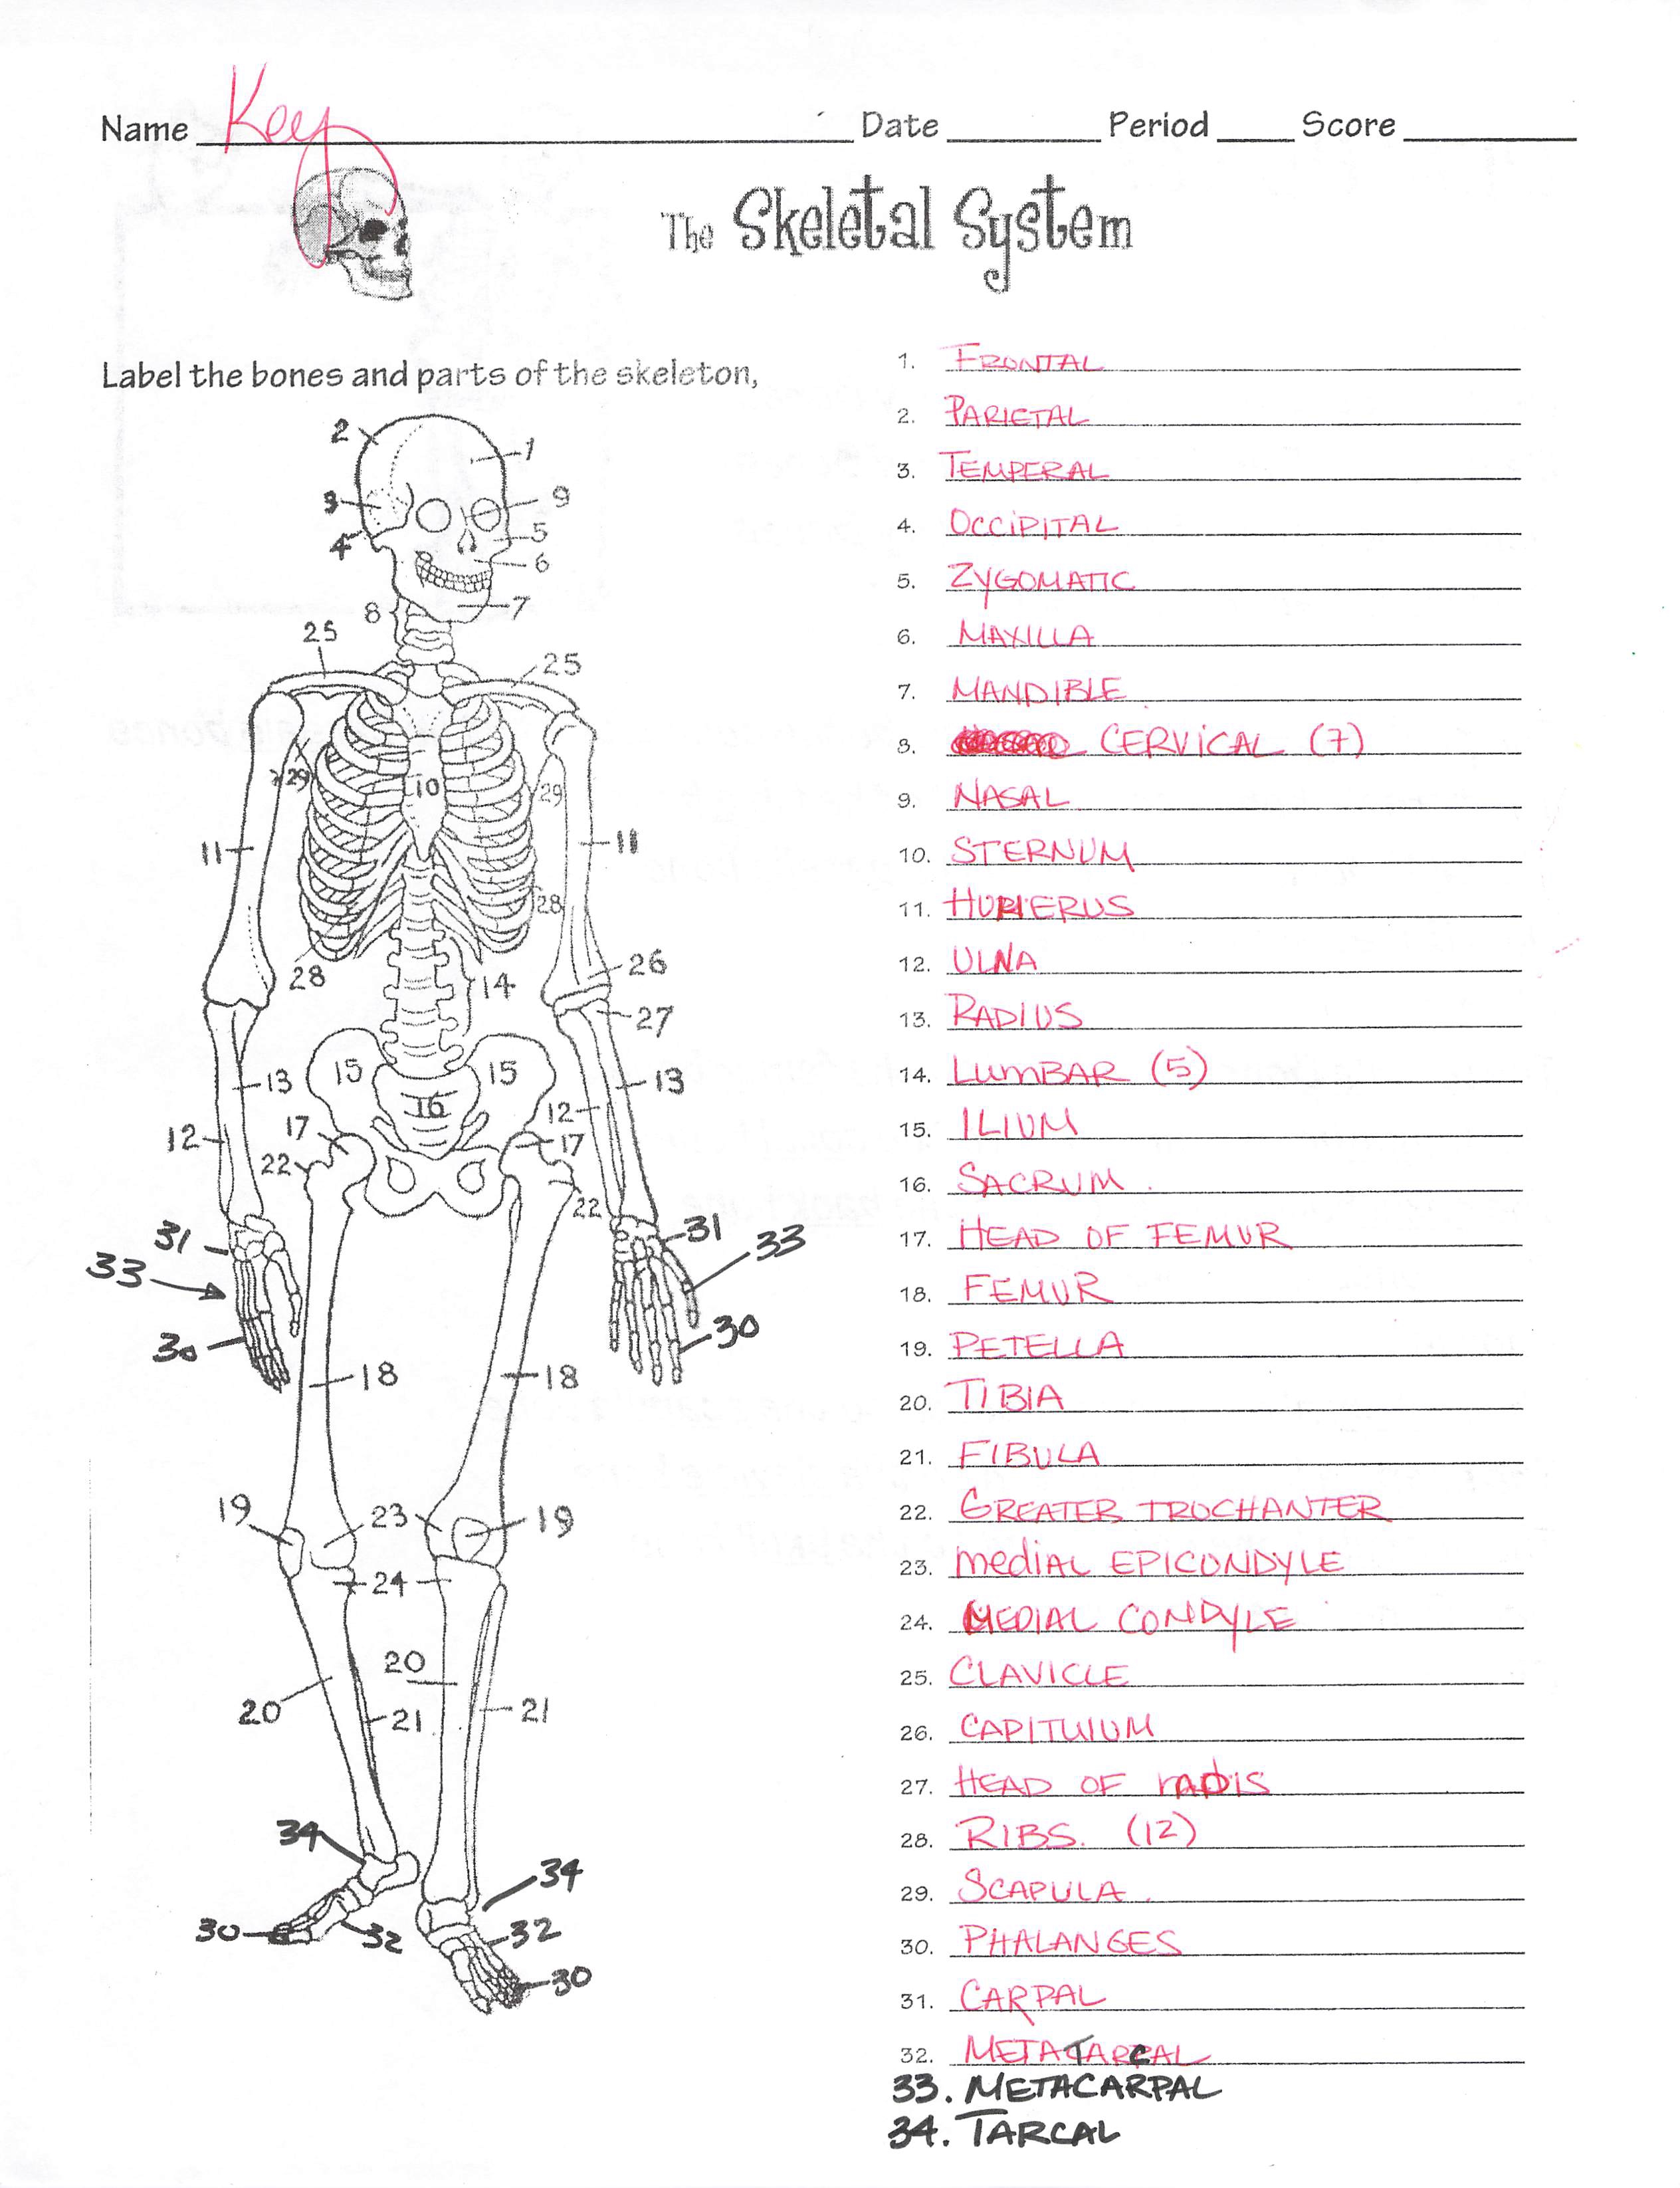 33-skeletal-system-label-quiz-labels-design-ideas-2020